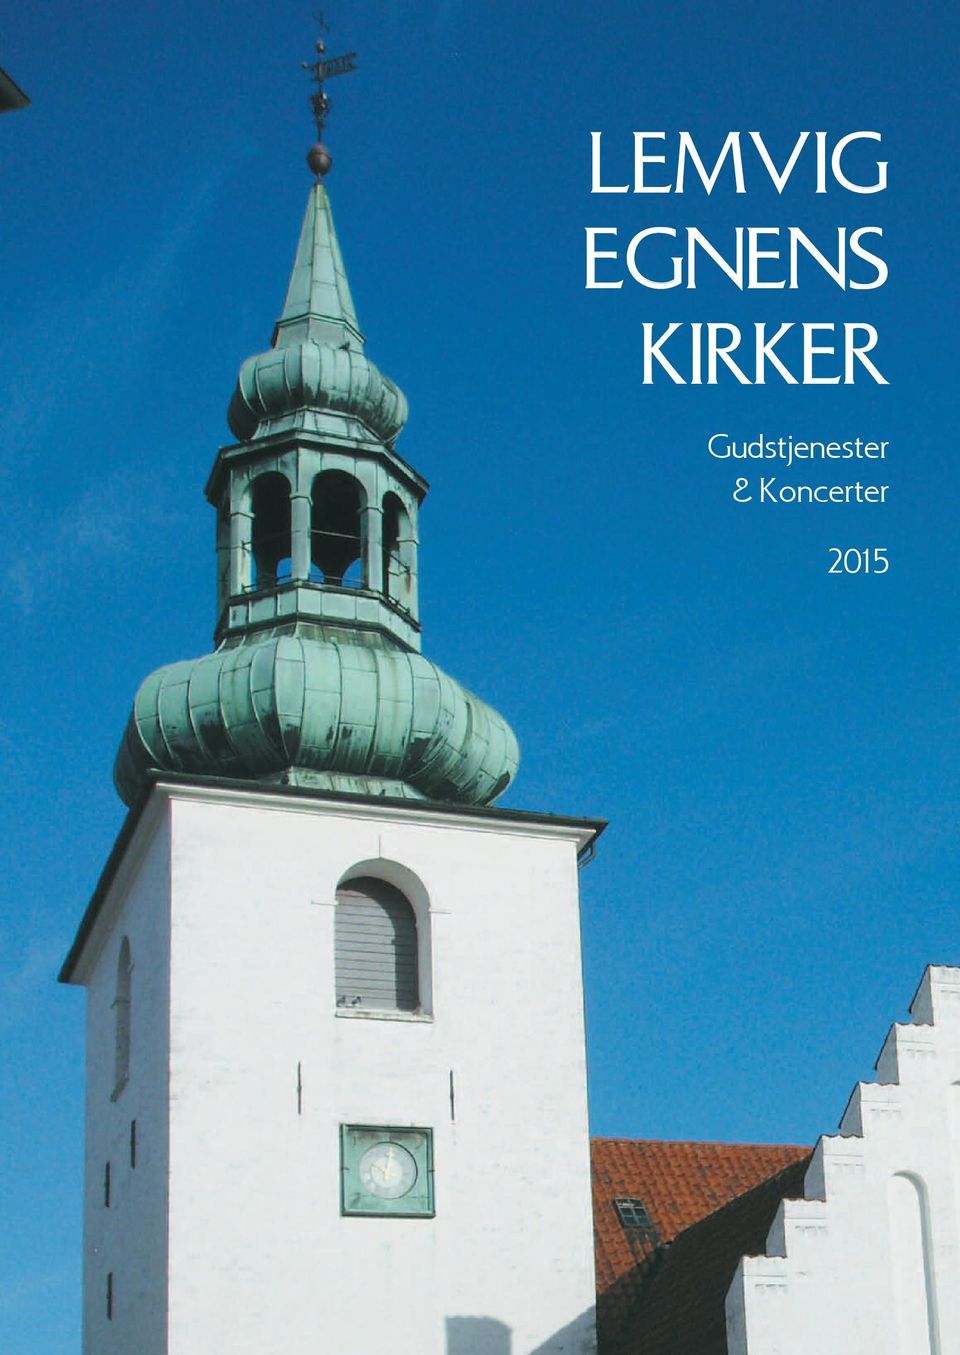 Lemvig egnens kirker. Gudstjenester & Koncerter - PDF Free Download